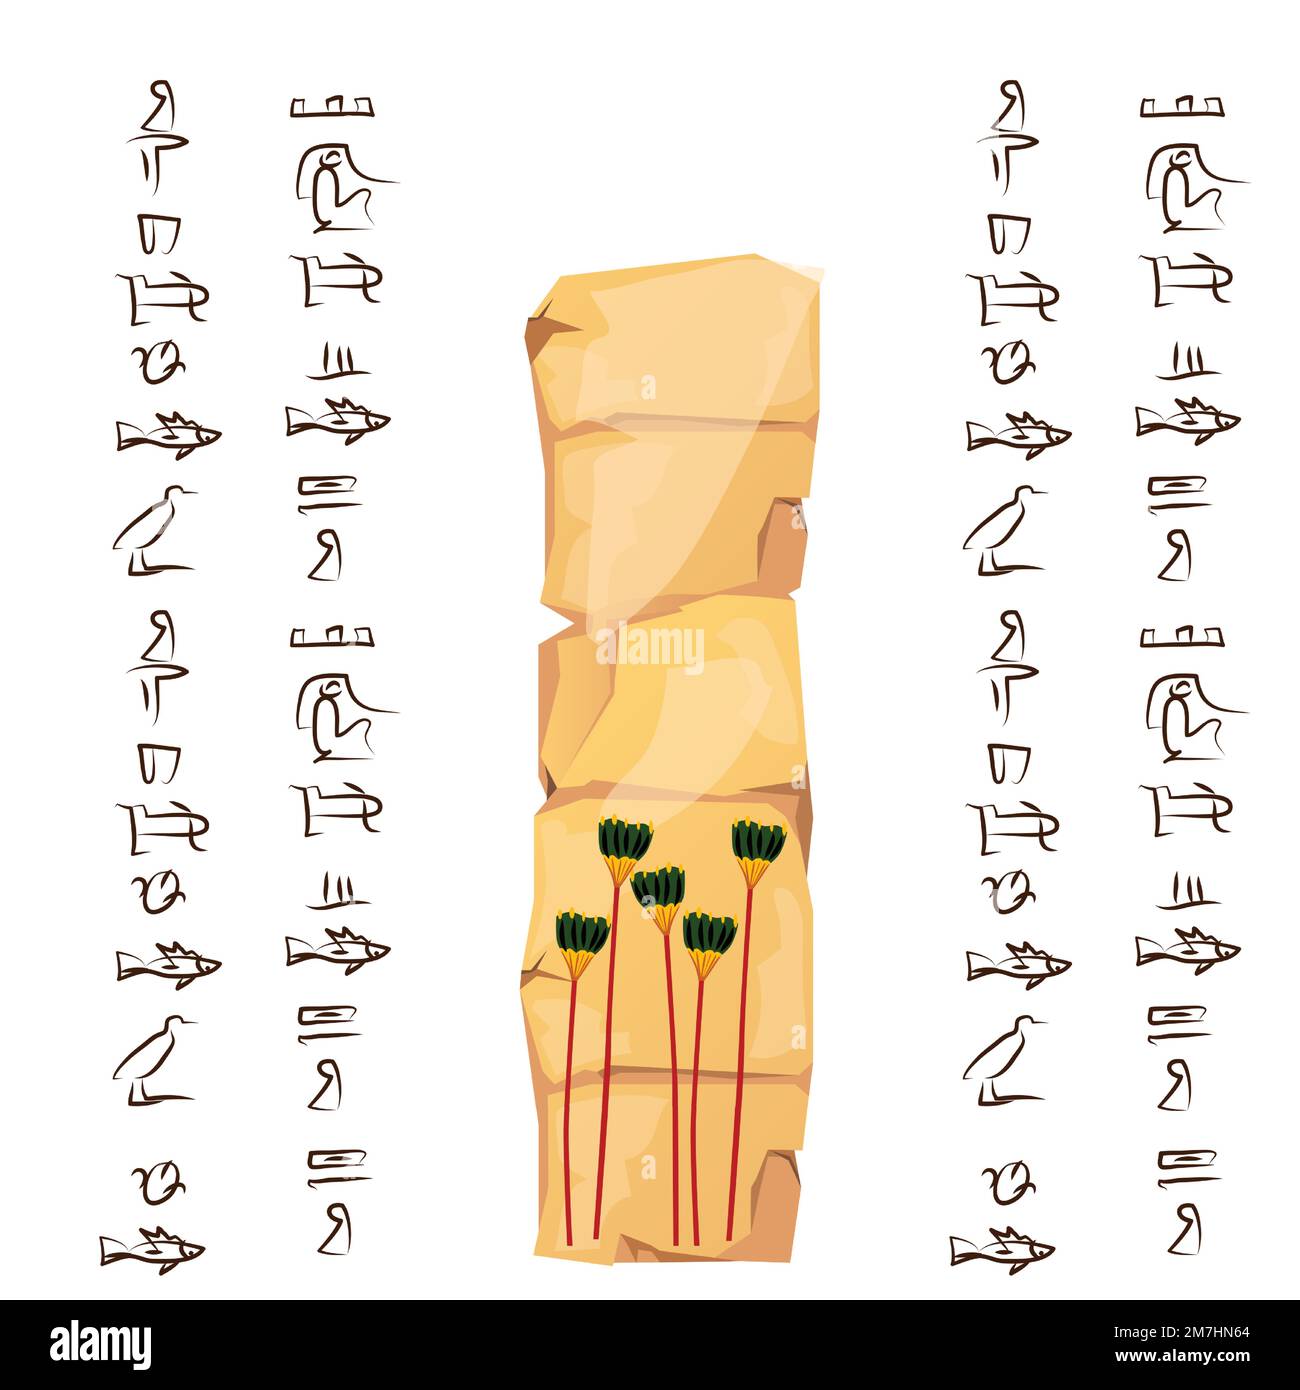 Alte Ägypten Papyrus oder Stein Cartoon Vektor mit Hieroglyphen und ägyptischen Symbol, hohe grüne Bäume, Dattelpalmen Hain isoliert auf weißem Hintergrund Stock Vektor